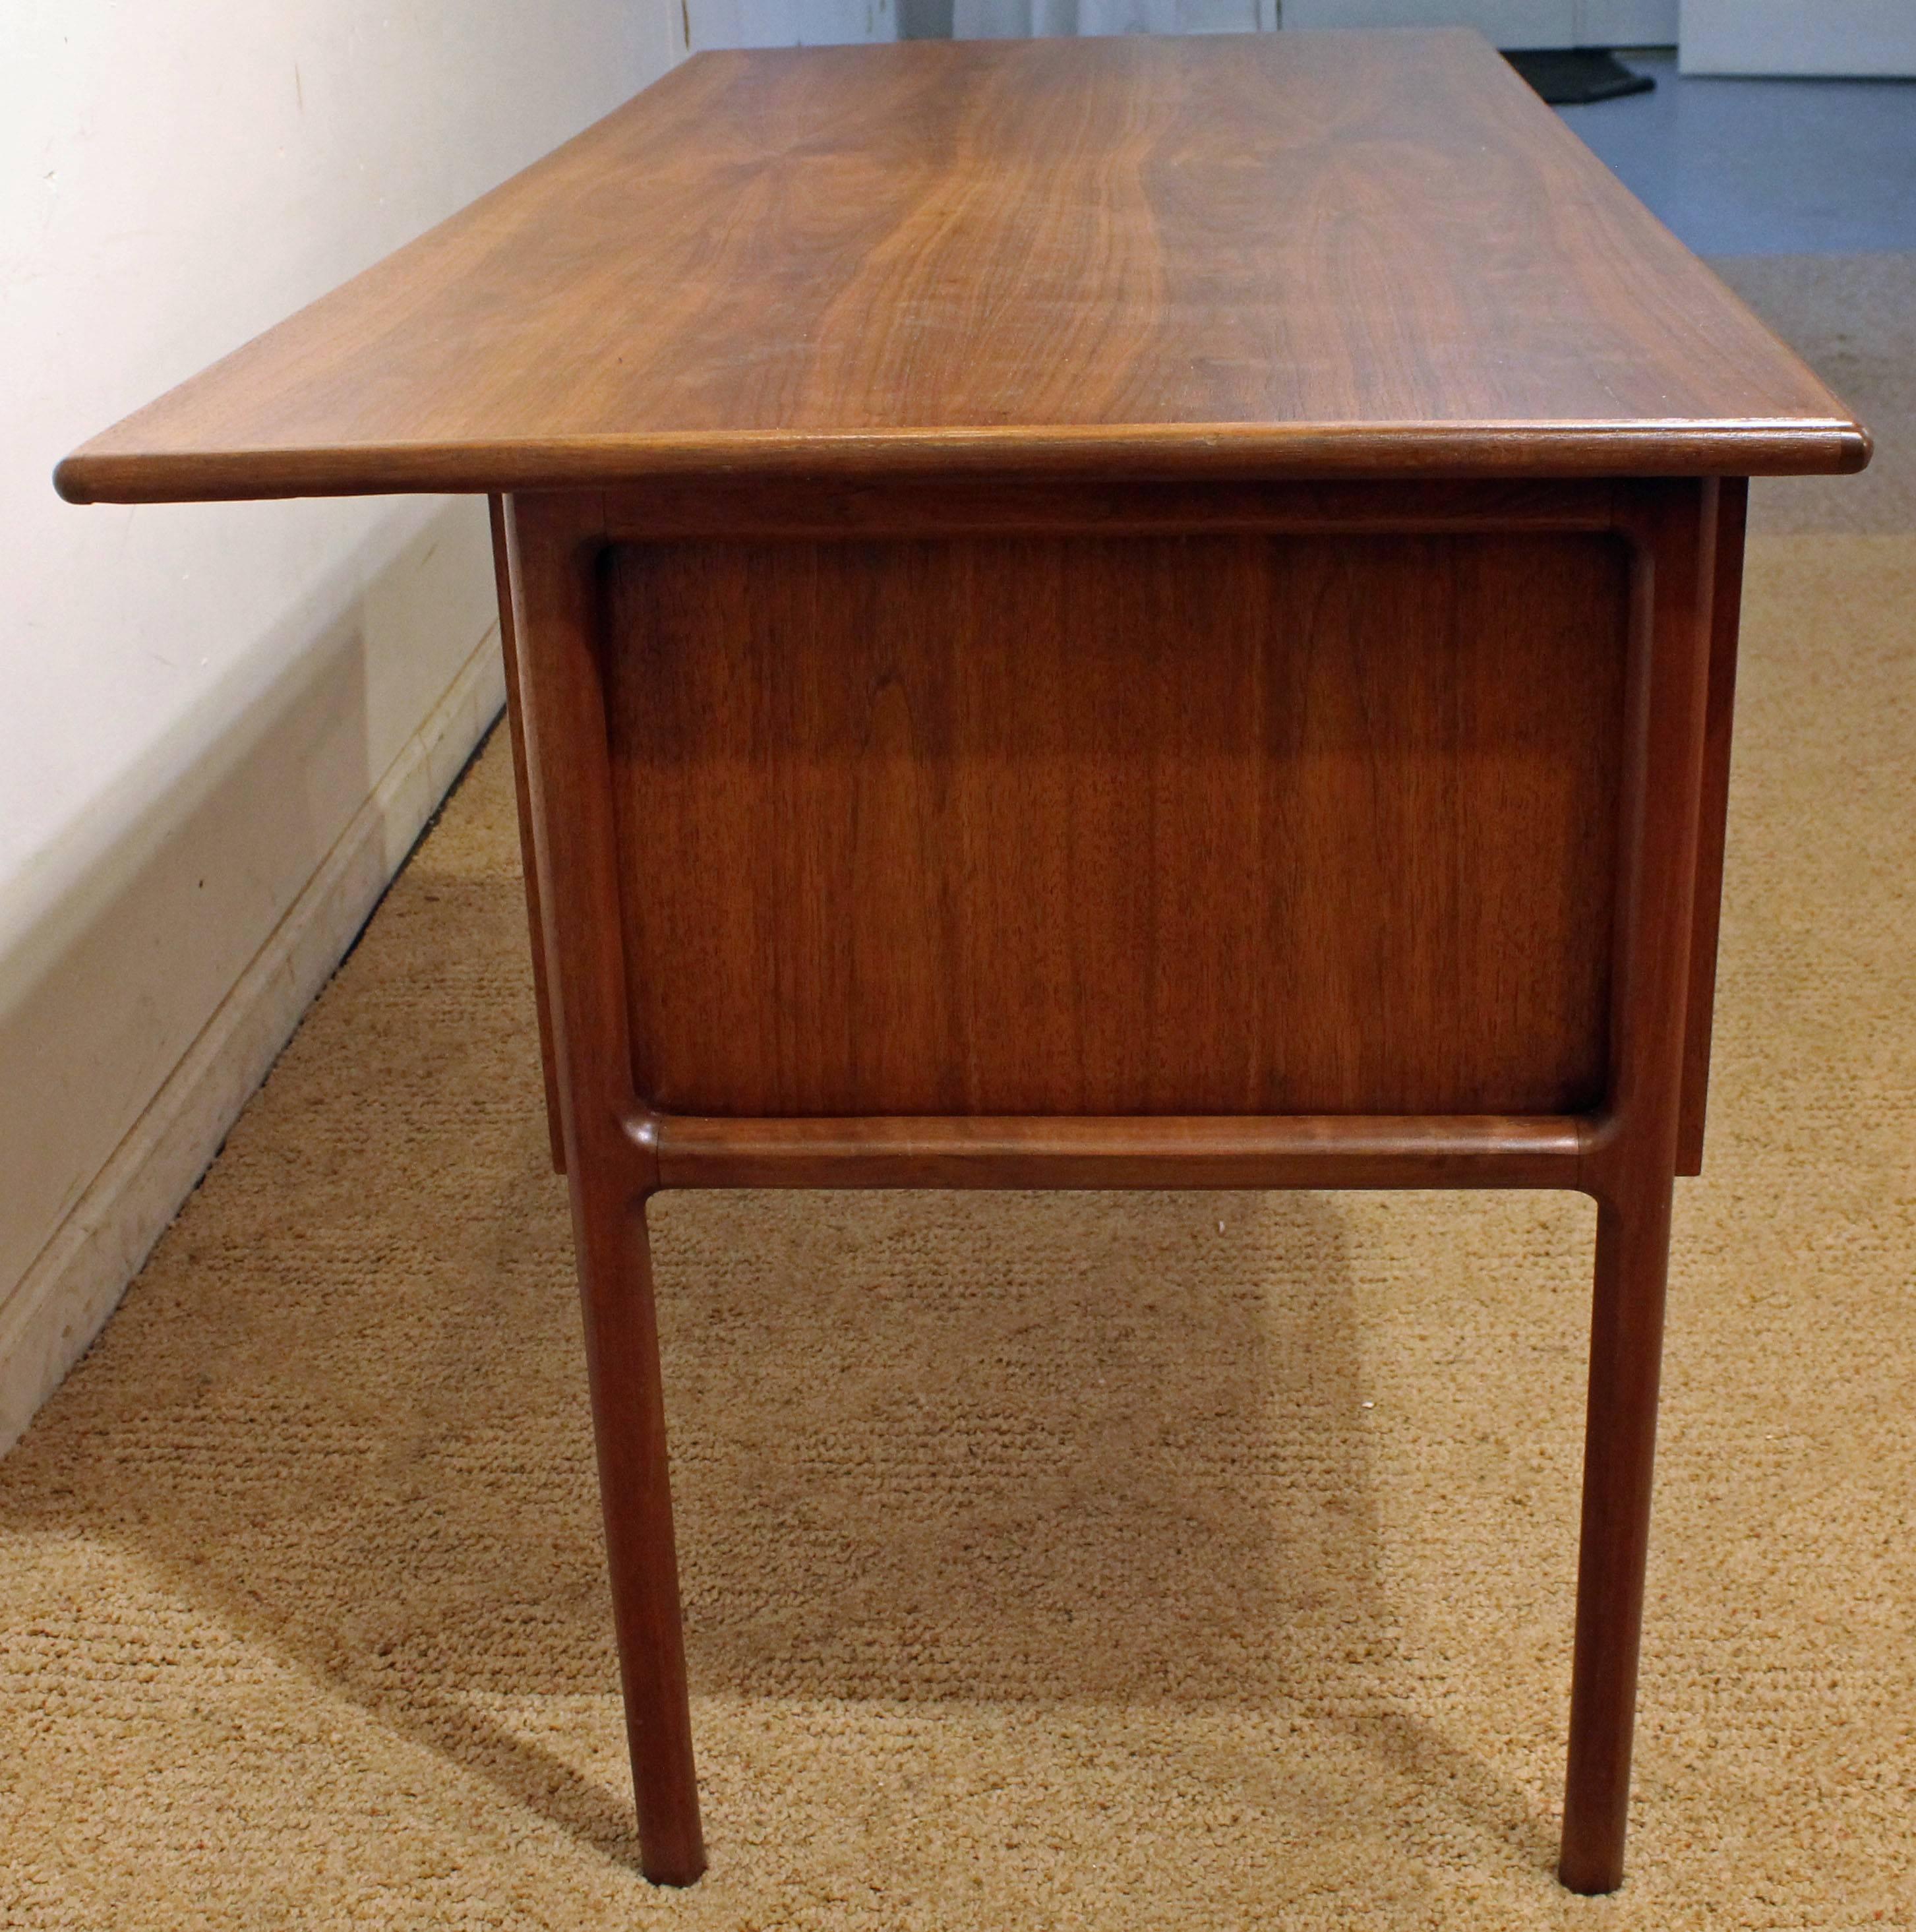 Mid-20th Century Danish Modern Arne Vodder Style Teak Desk